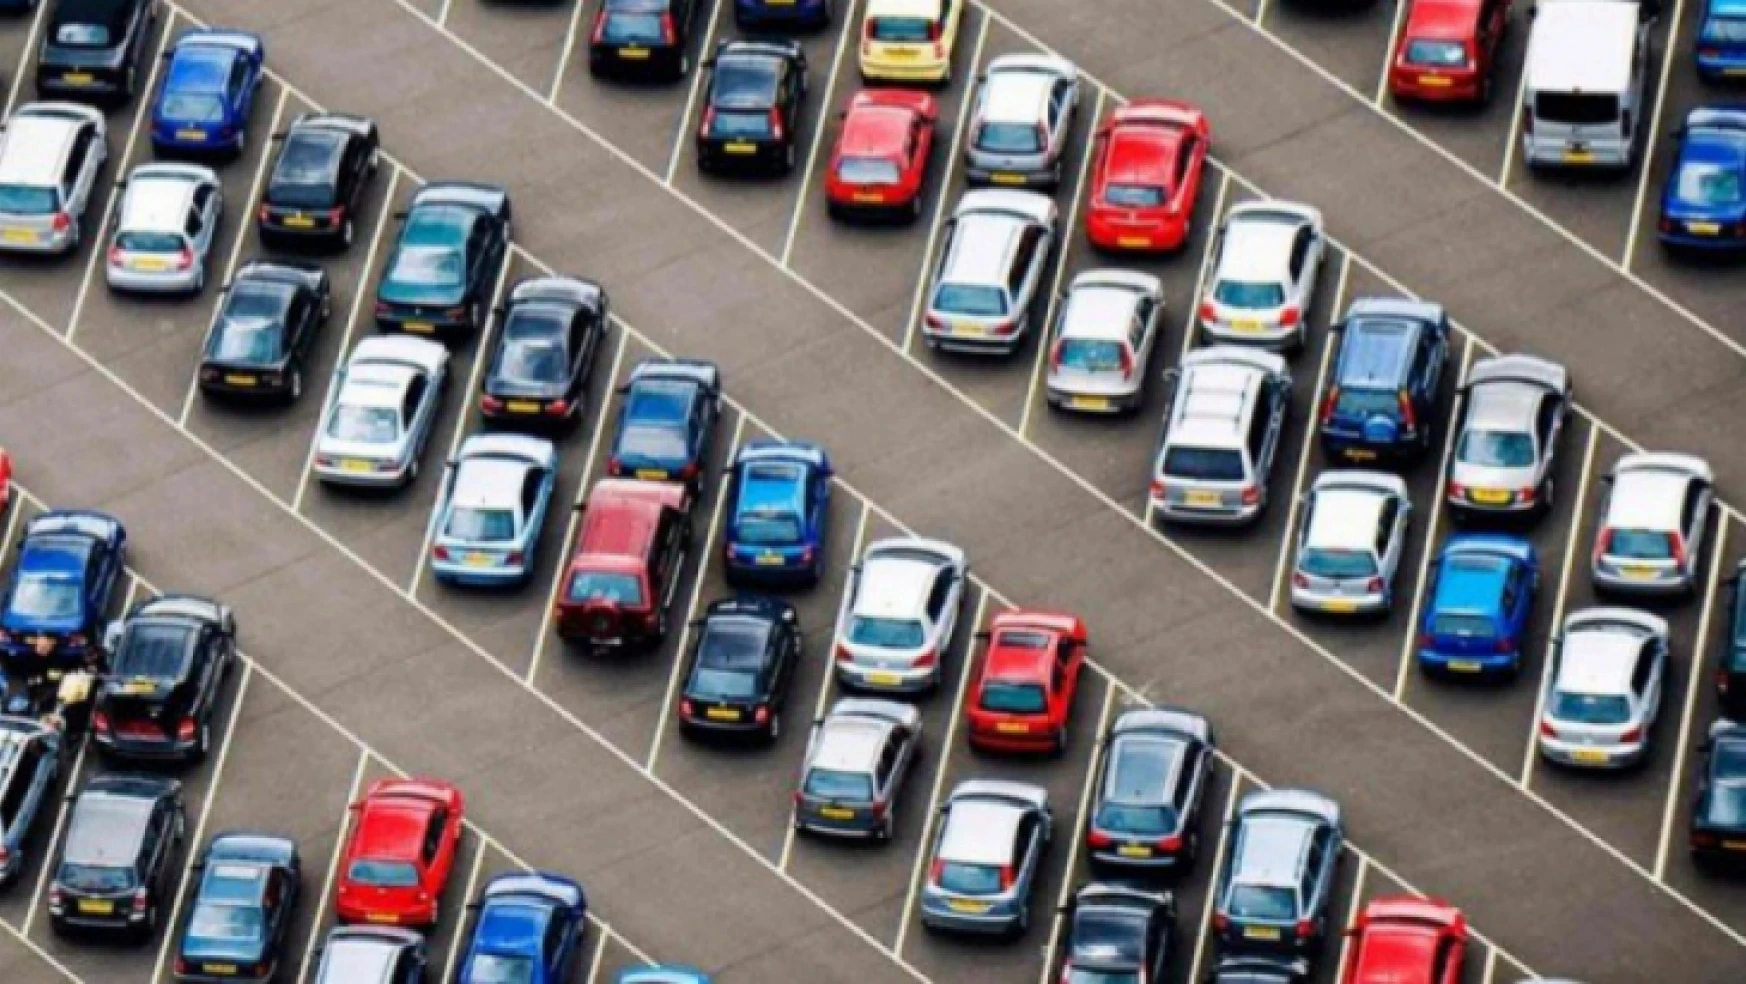 Malatya'da trafiğe kayıtlı araç sayısı Kasım ayı sonu itibarıyla 200 235 oldu.